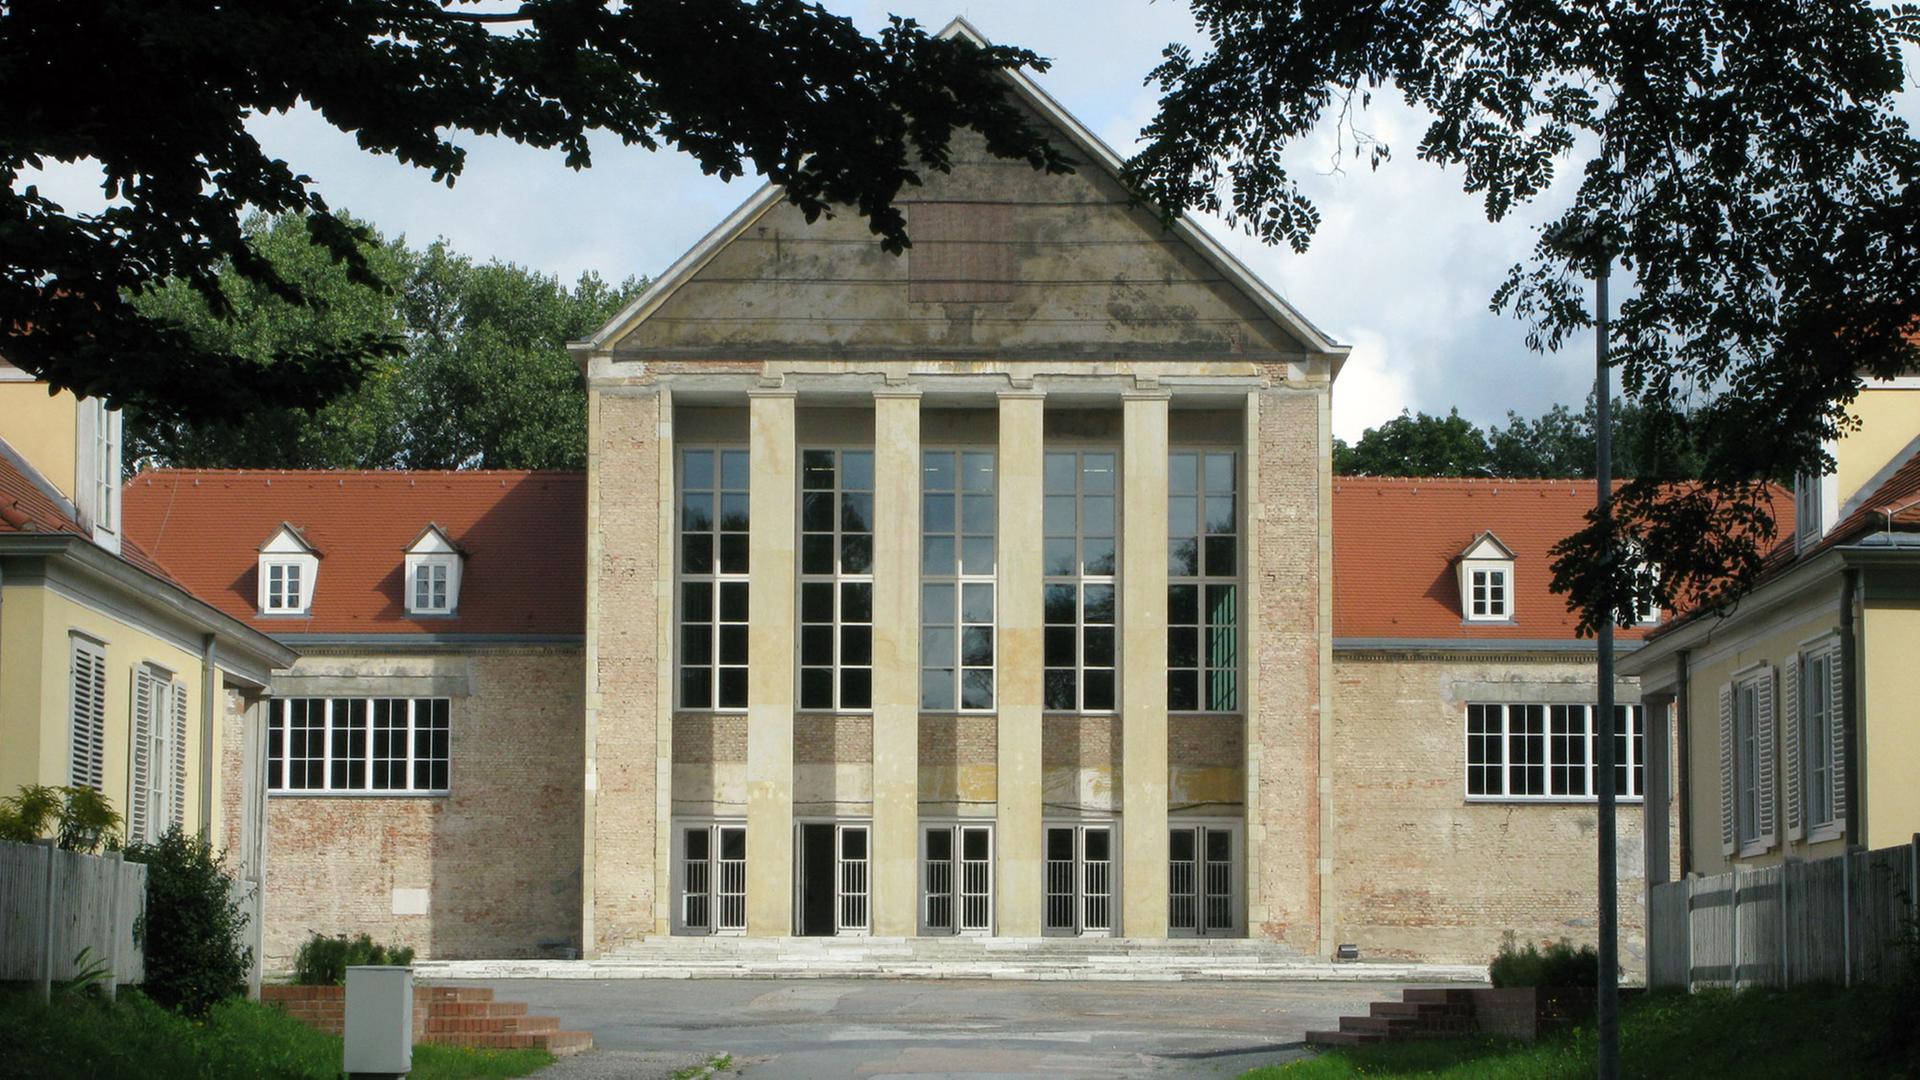 Blick auf das Festspielhaus des Europäischen Zentrums der Künste in Dresden-Hellerau, zu dem auch das Deutsche Komponistenarchiv gehört